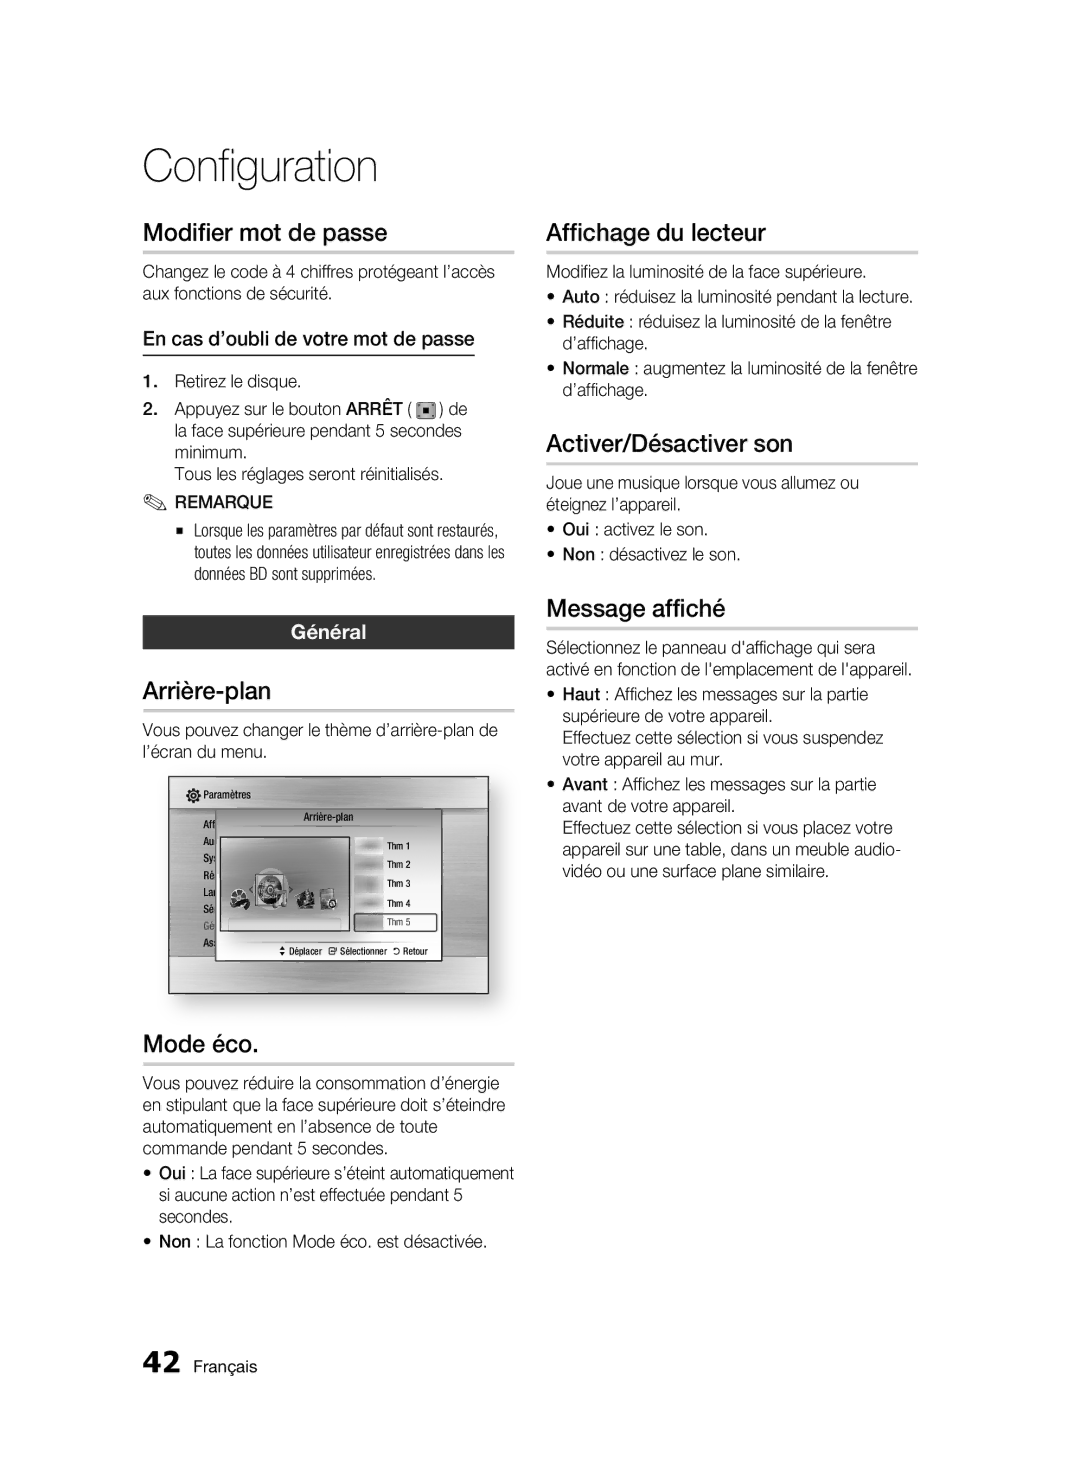 Samsung BD-C7500/XEF manual Modifier mot de passe, Arrière-plan, Mode éco, Affichage du lecteur, Activer/Désactiver son 